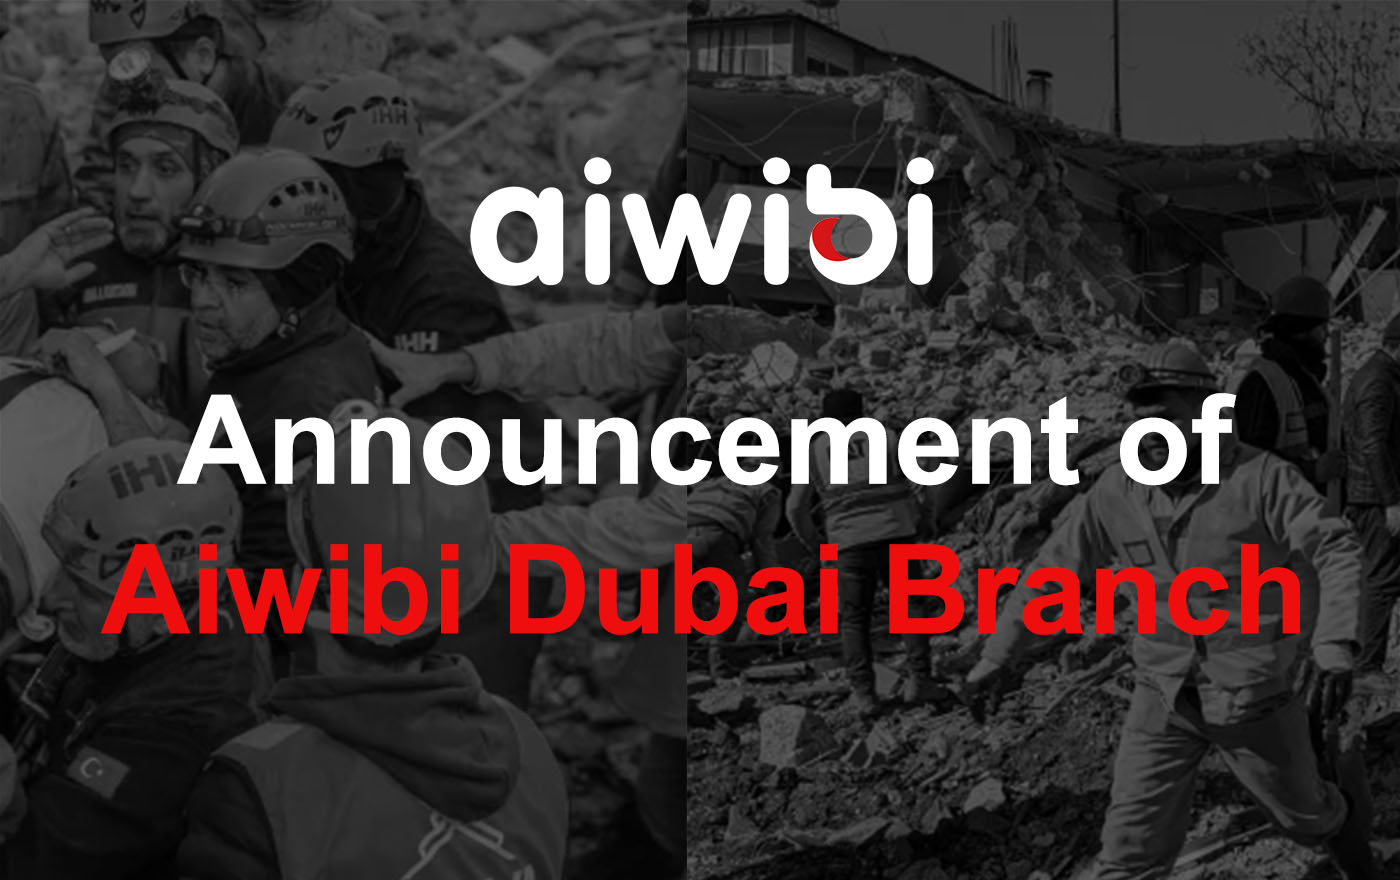 Объявление филиала Aiwibi в Дубае: присоединяйтесь к нам в поддержке жертв землетрясения в Турции и Сирии